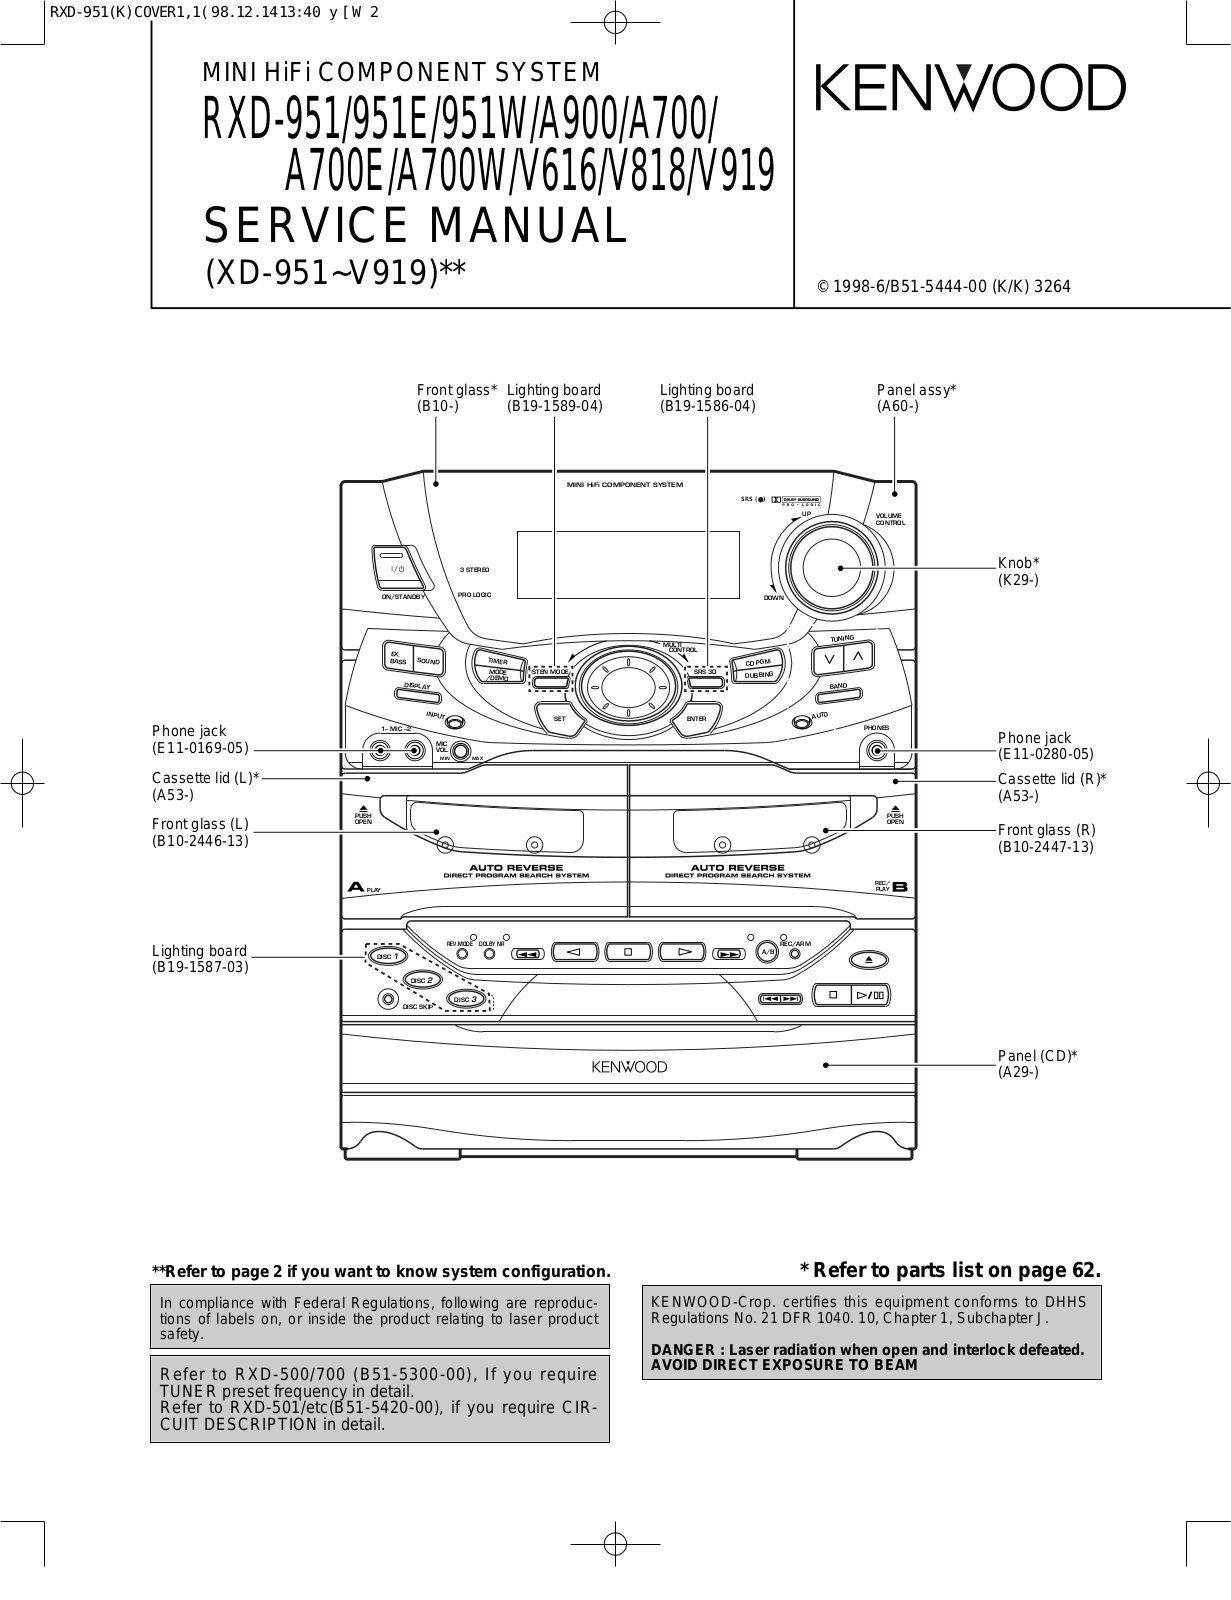 Kenwood RXD-951, RXDA-700, RXDA-900, RXDV-616, RXDV-818 Service manual